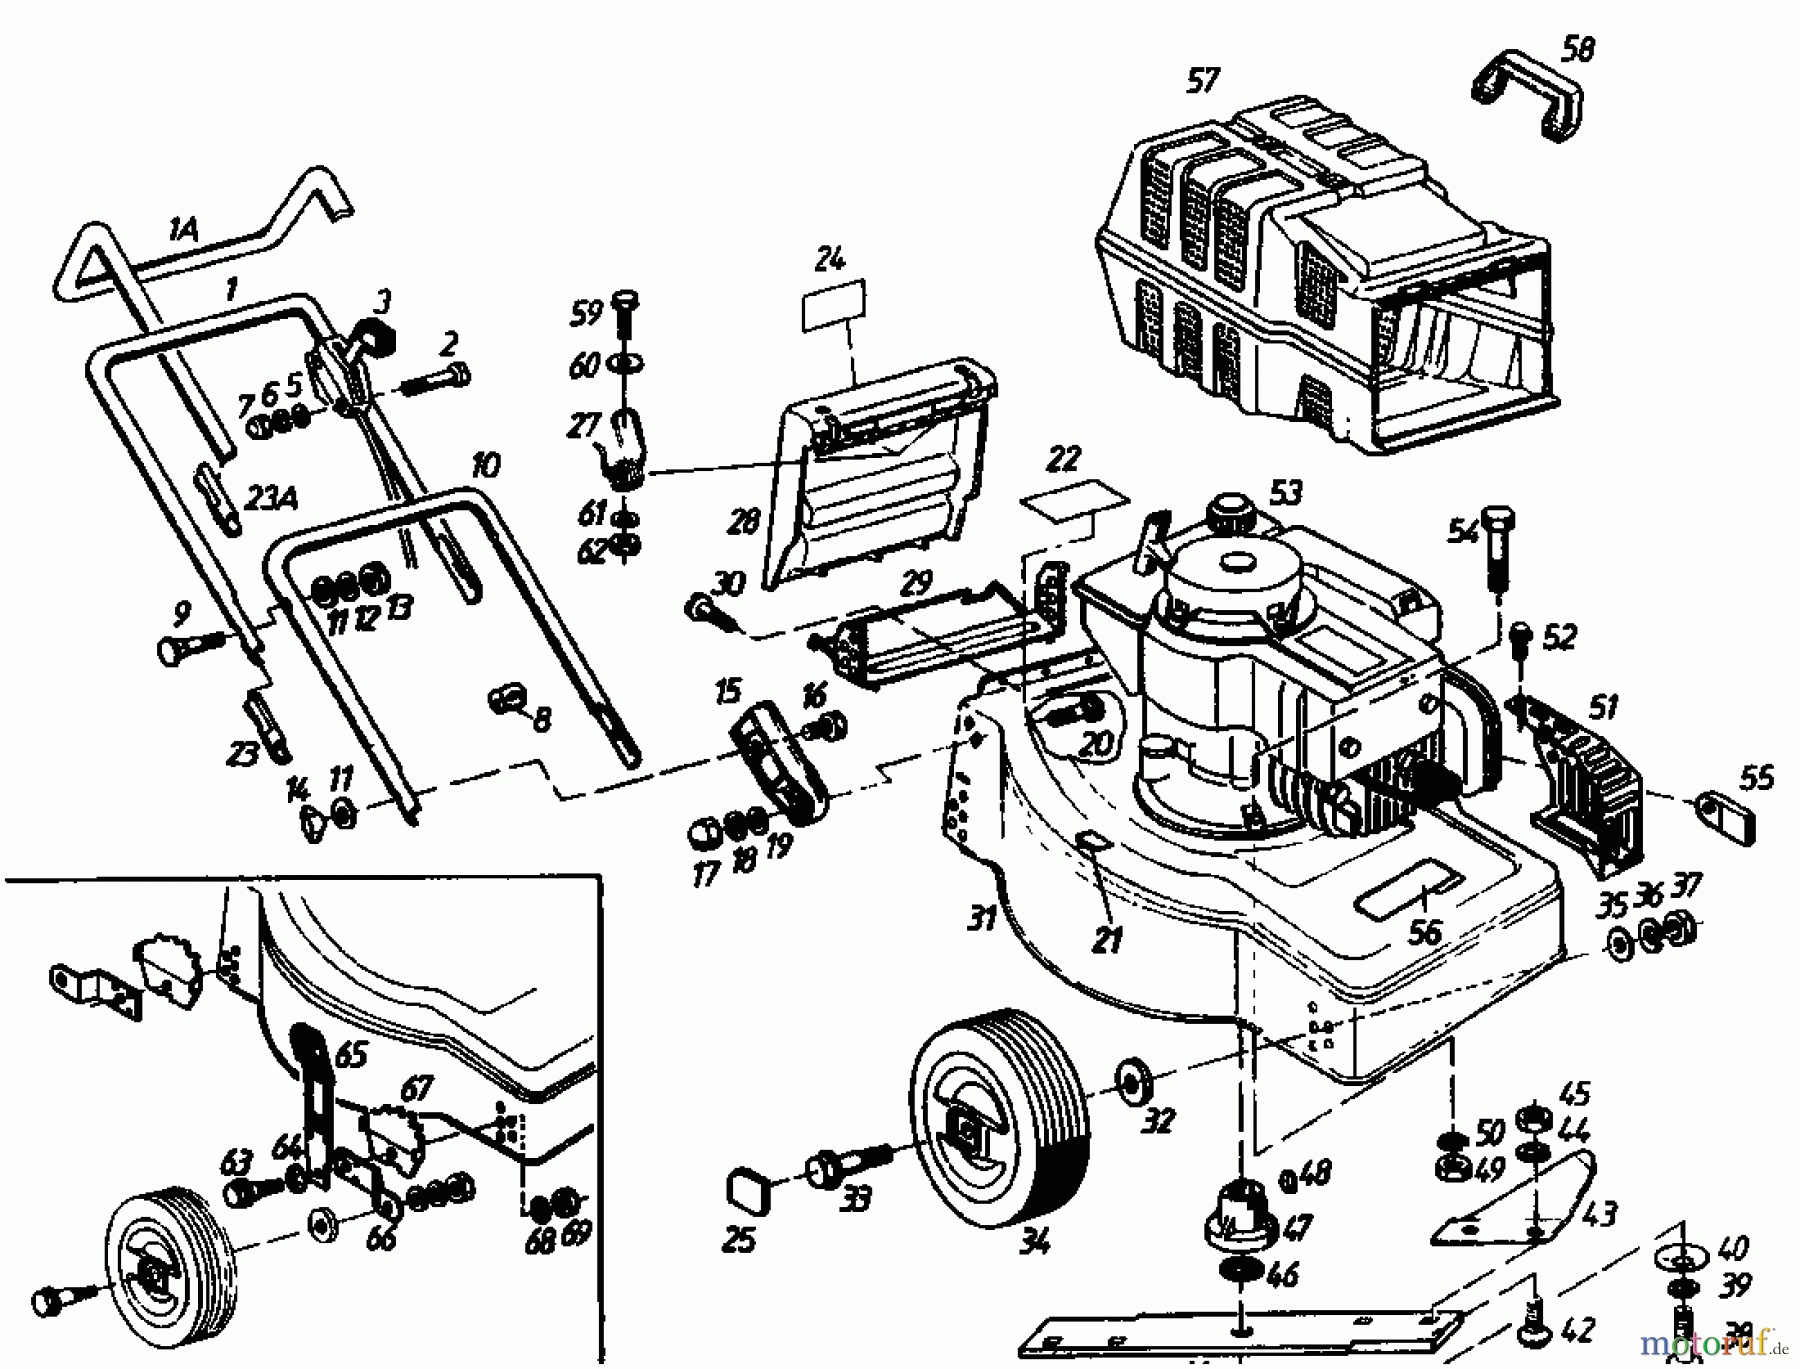  Golf Electric mower 245 EF 02881.02  (1985) Basic machine